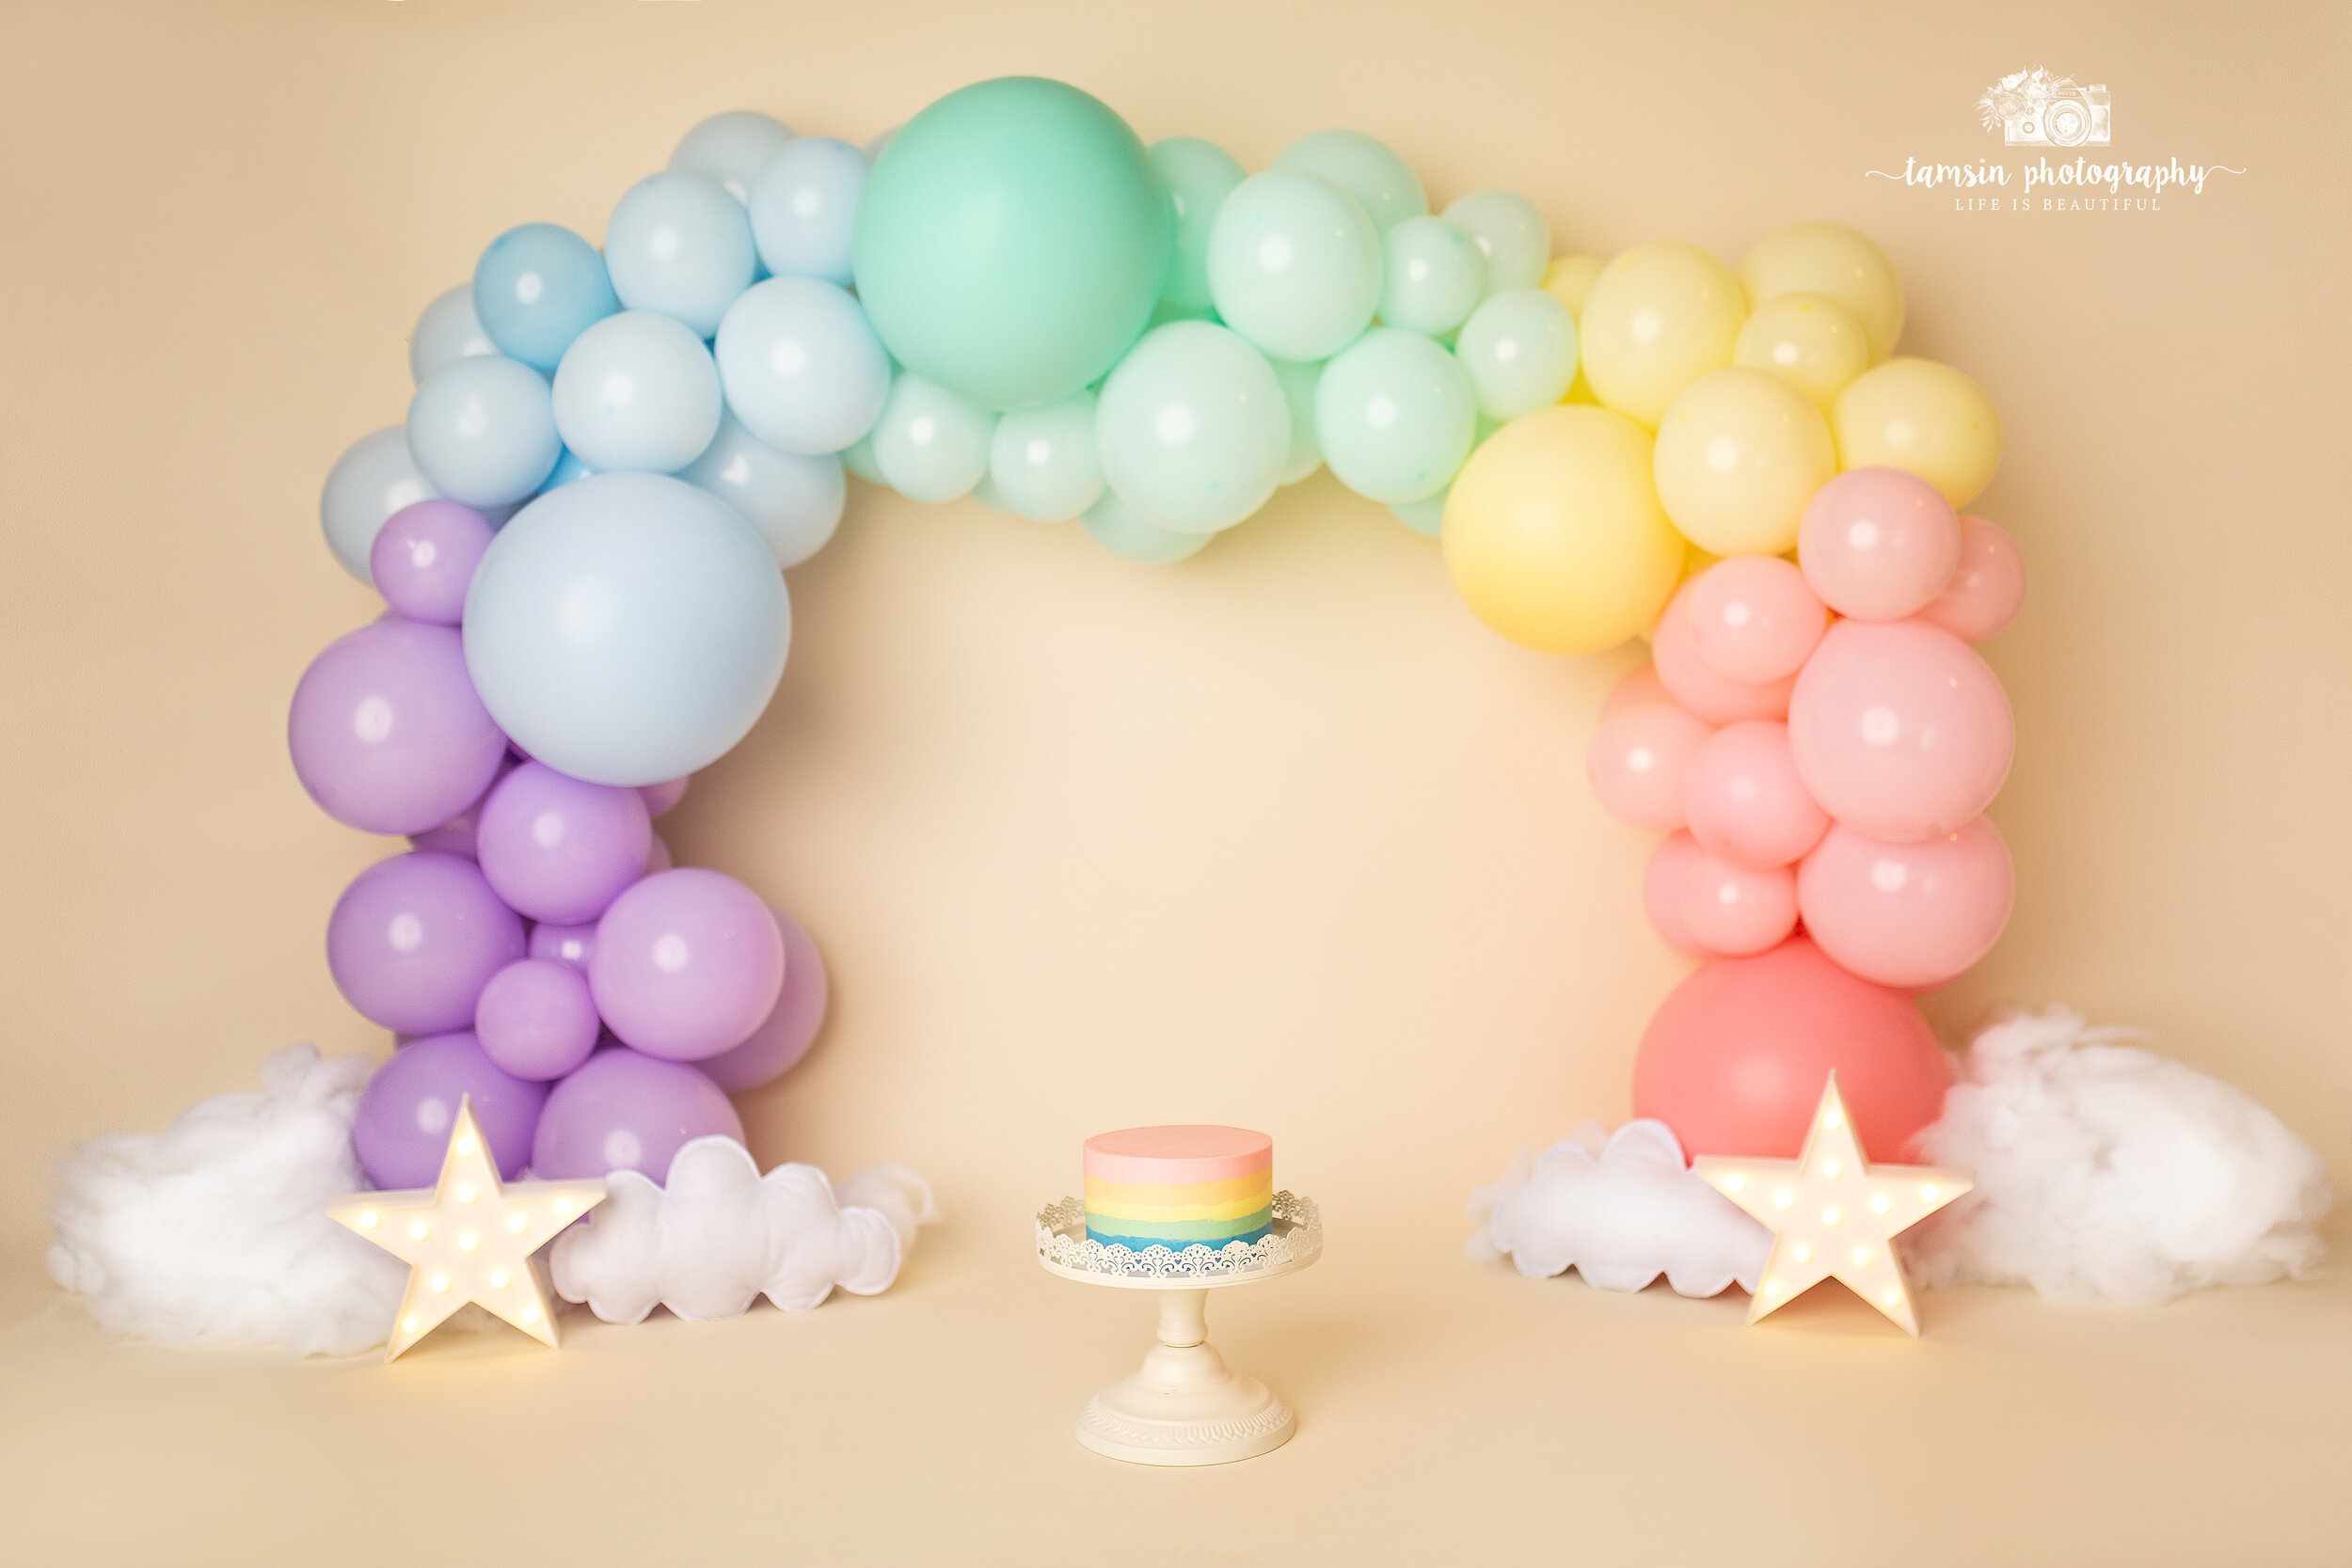 Rainbow Cake Smash Scene Tamsin Photography Balloon Banner Clouds Stars Girl.jpg